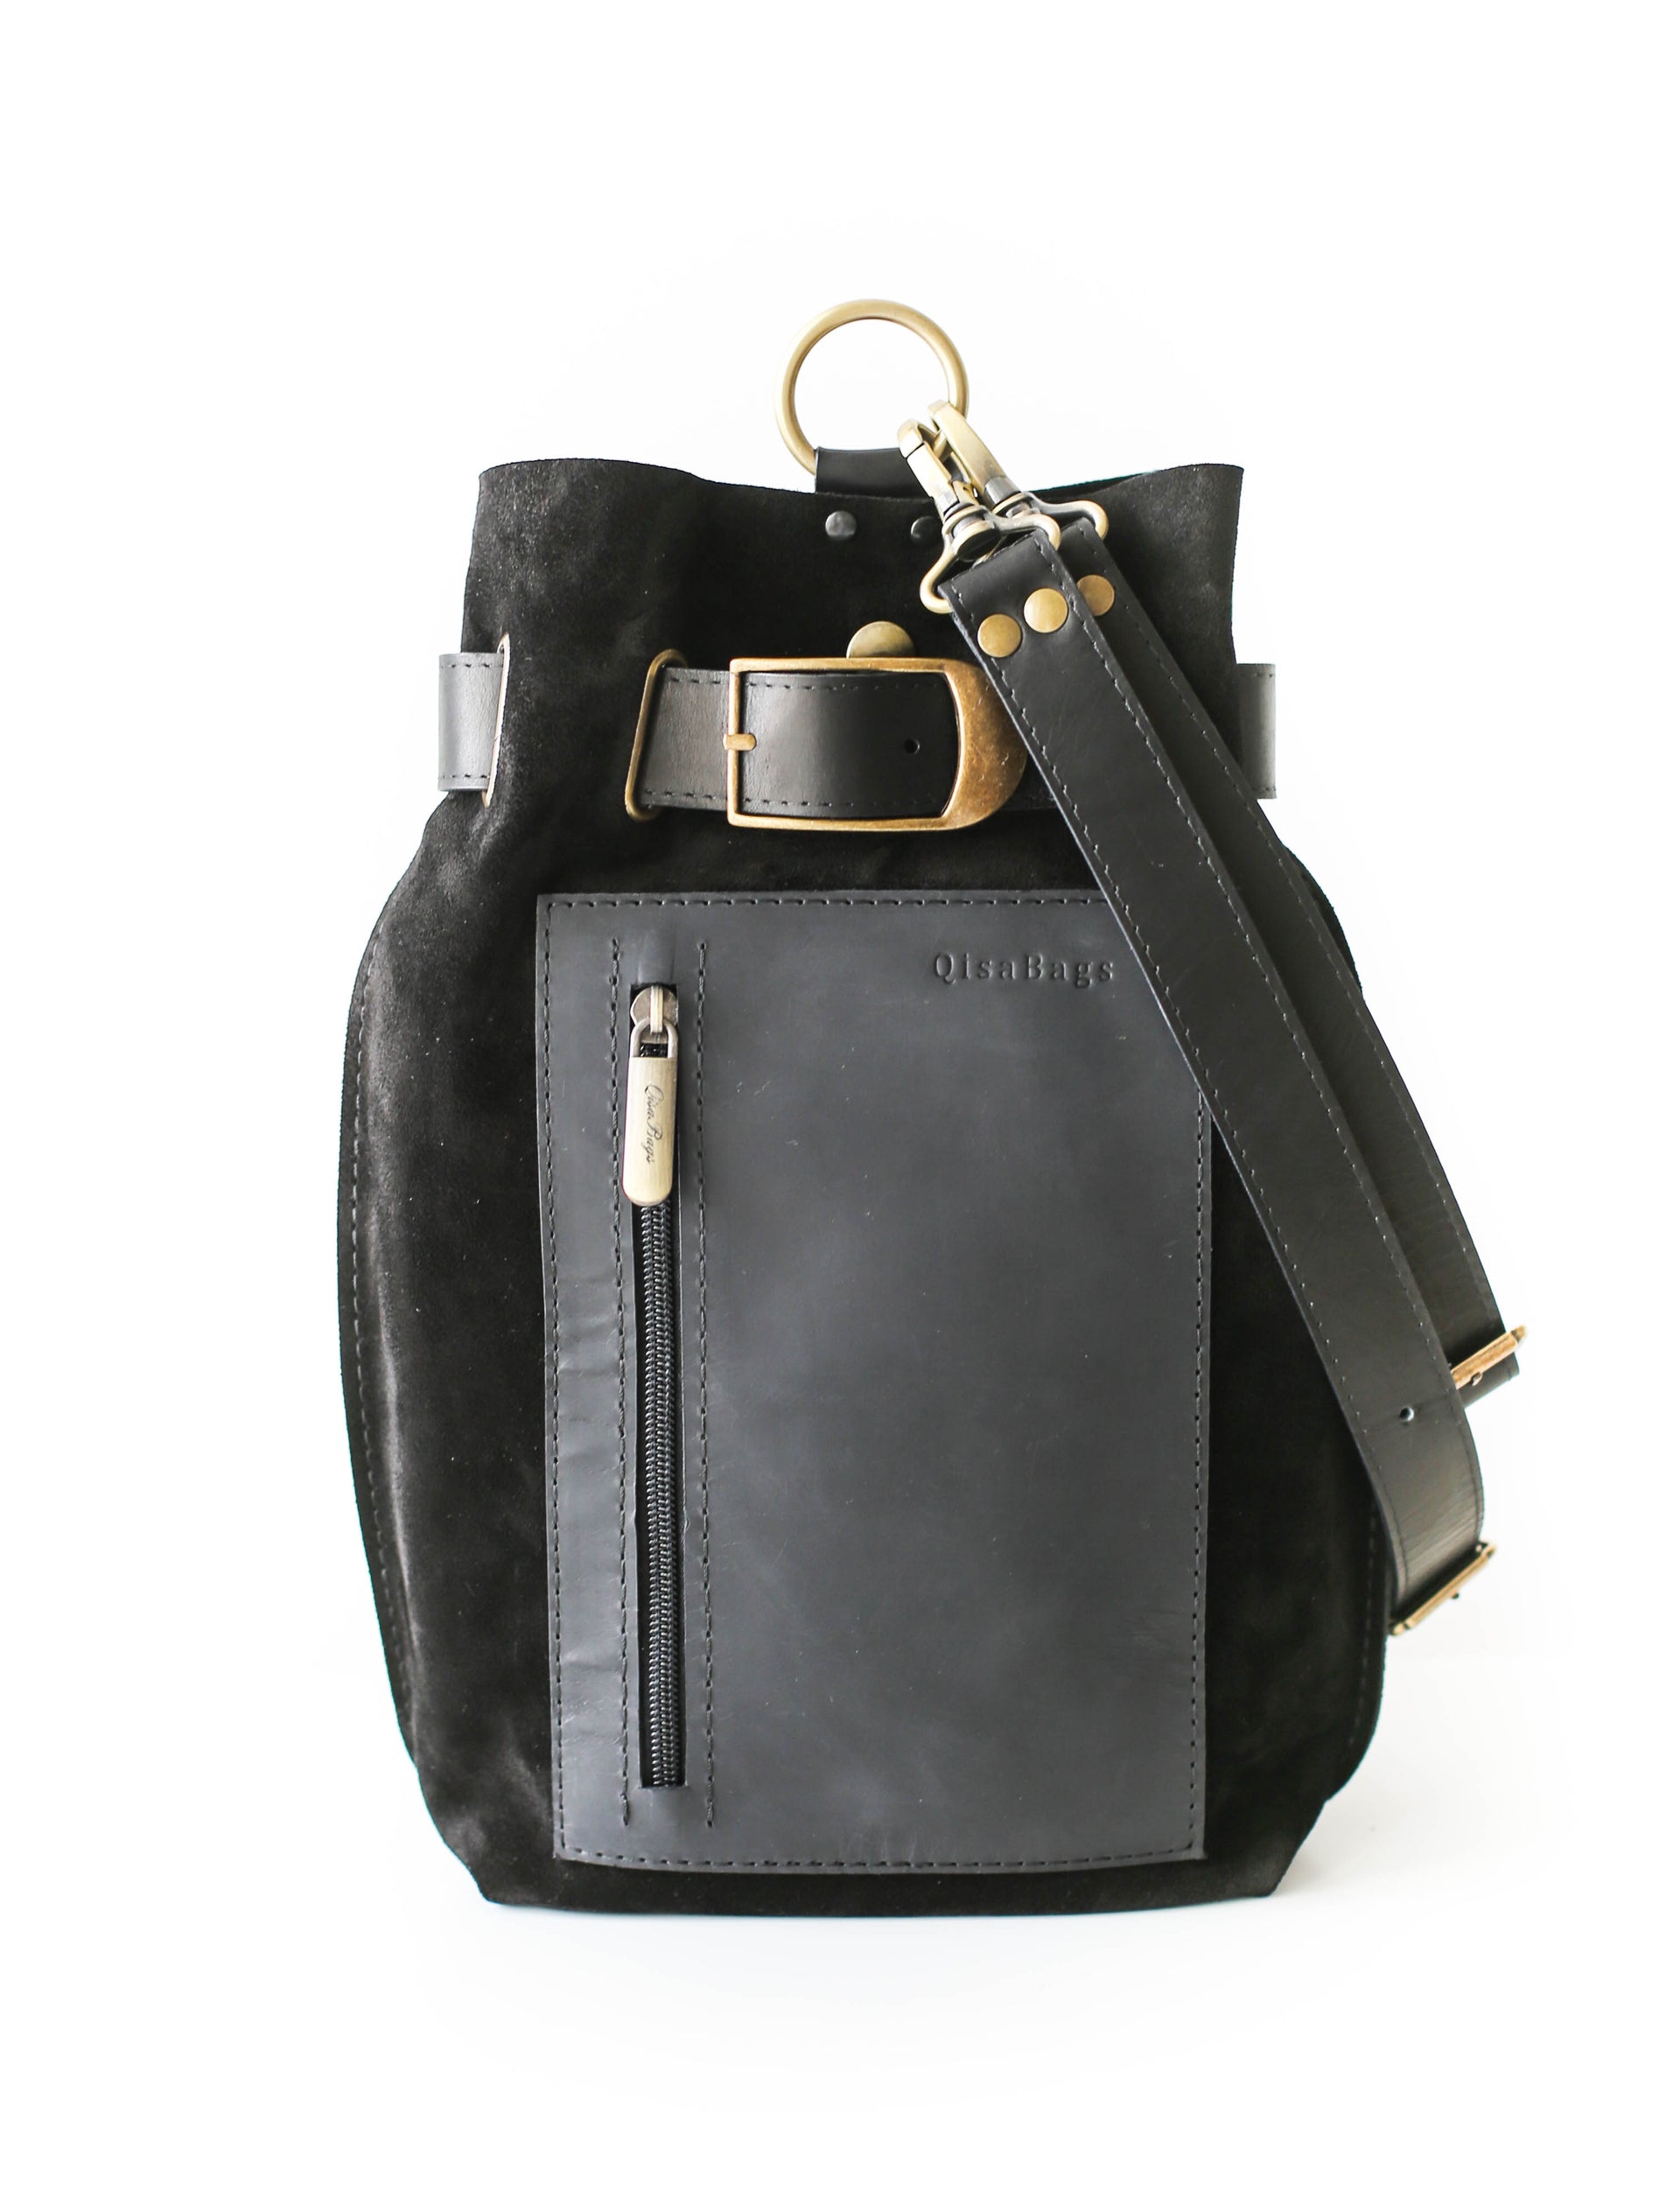 Black leather sling bag